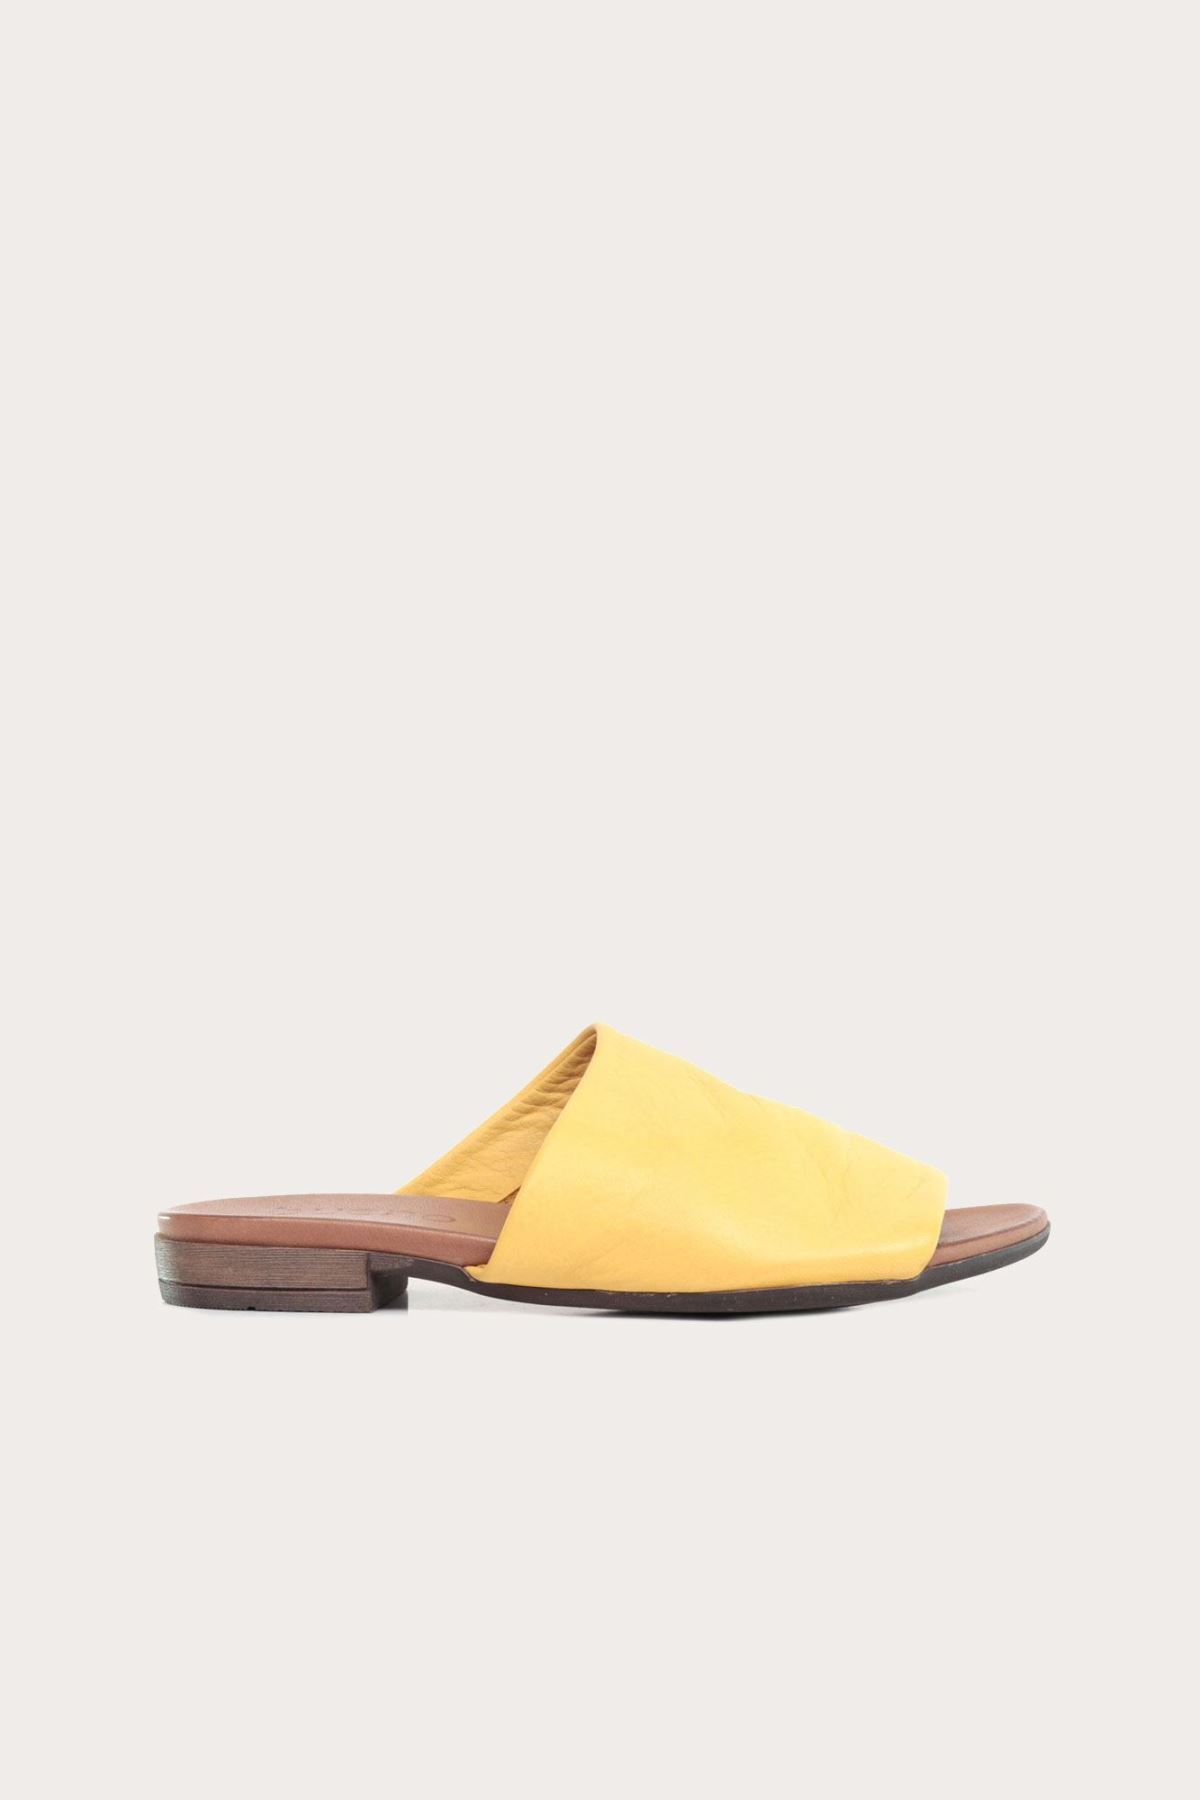 Genel Markalar Shoes Sarı Deri Kadın Düz Terlik